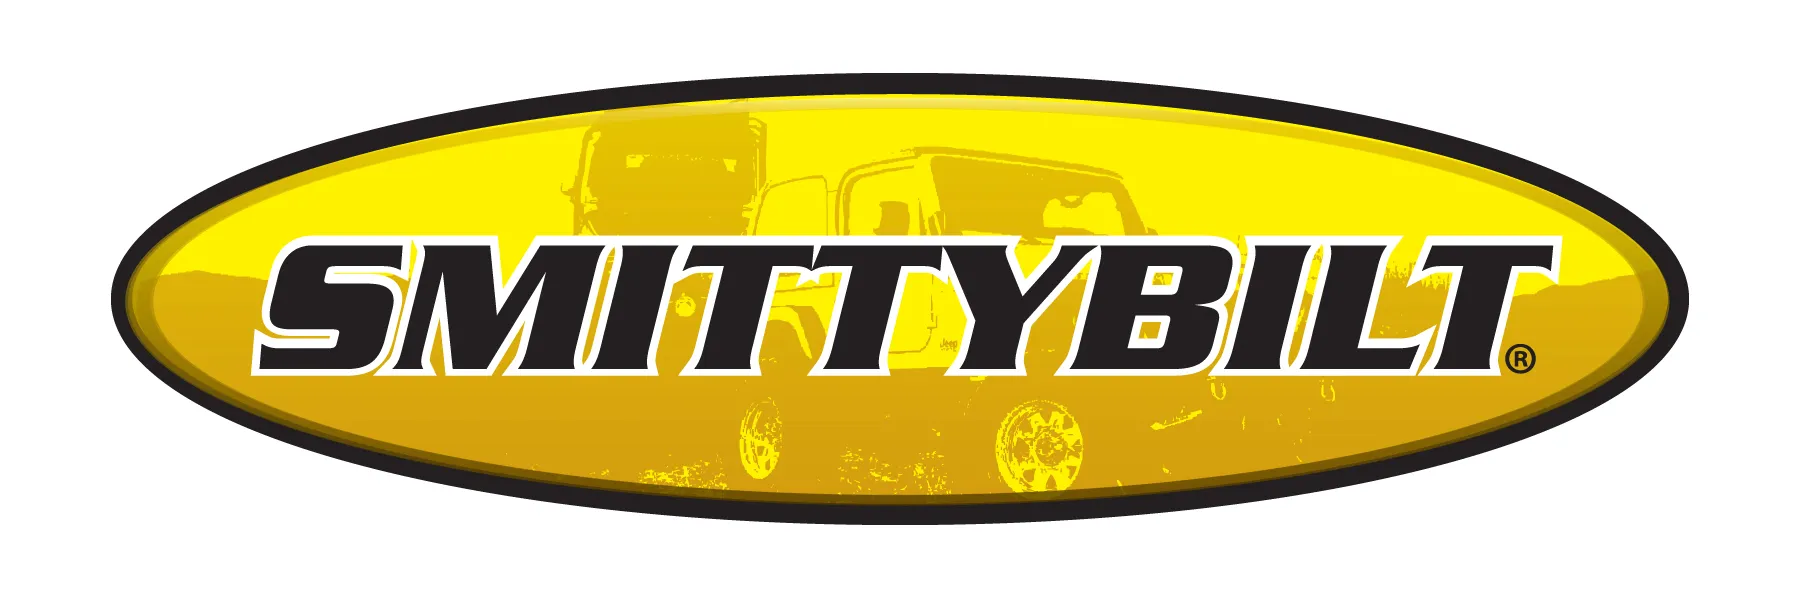 Logo for smittybilt